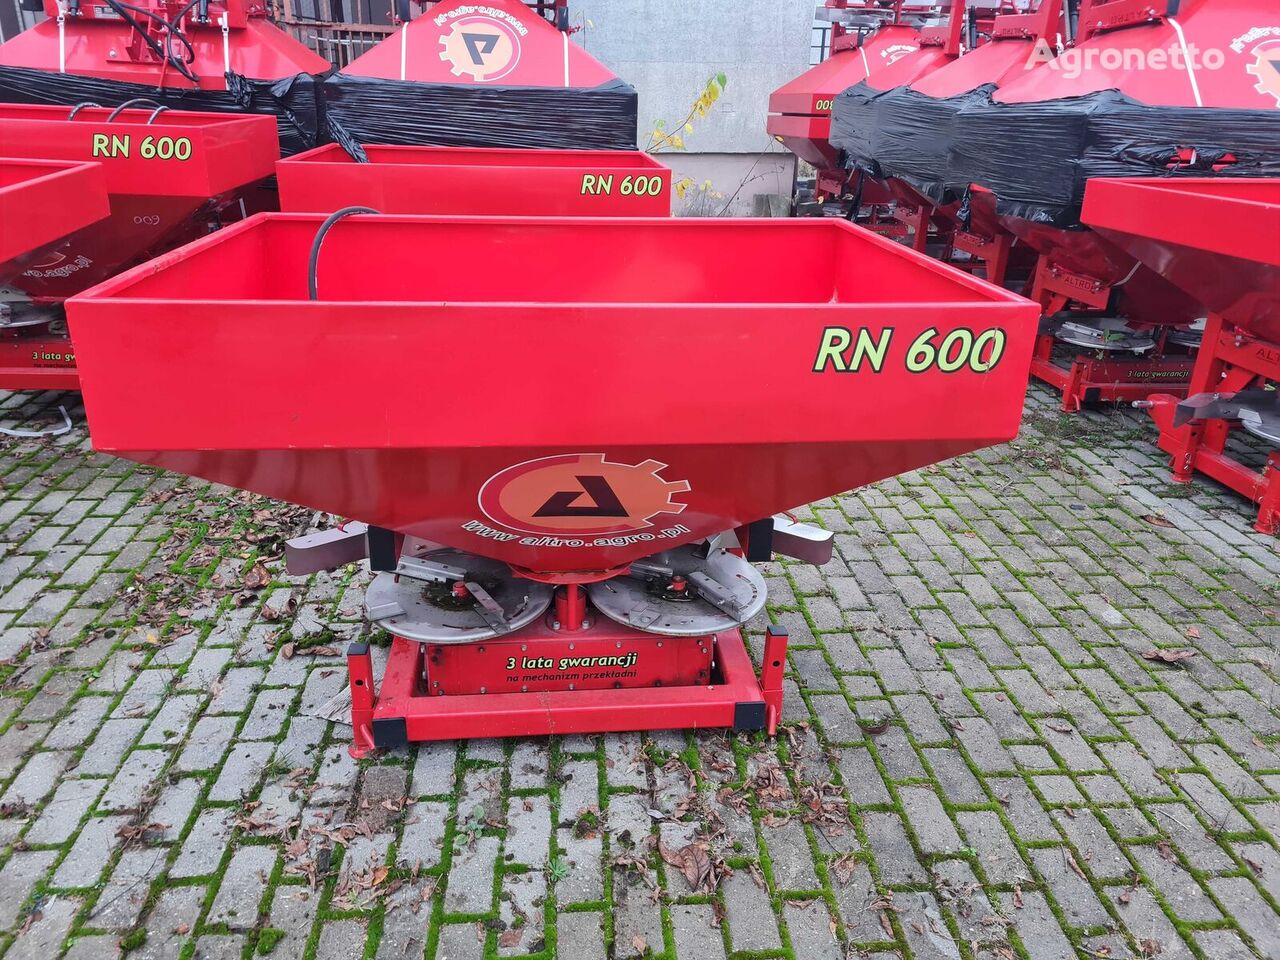 RN600 mounted fertilizer spreader